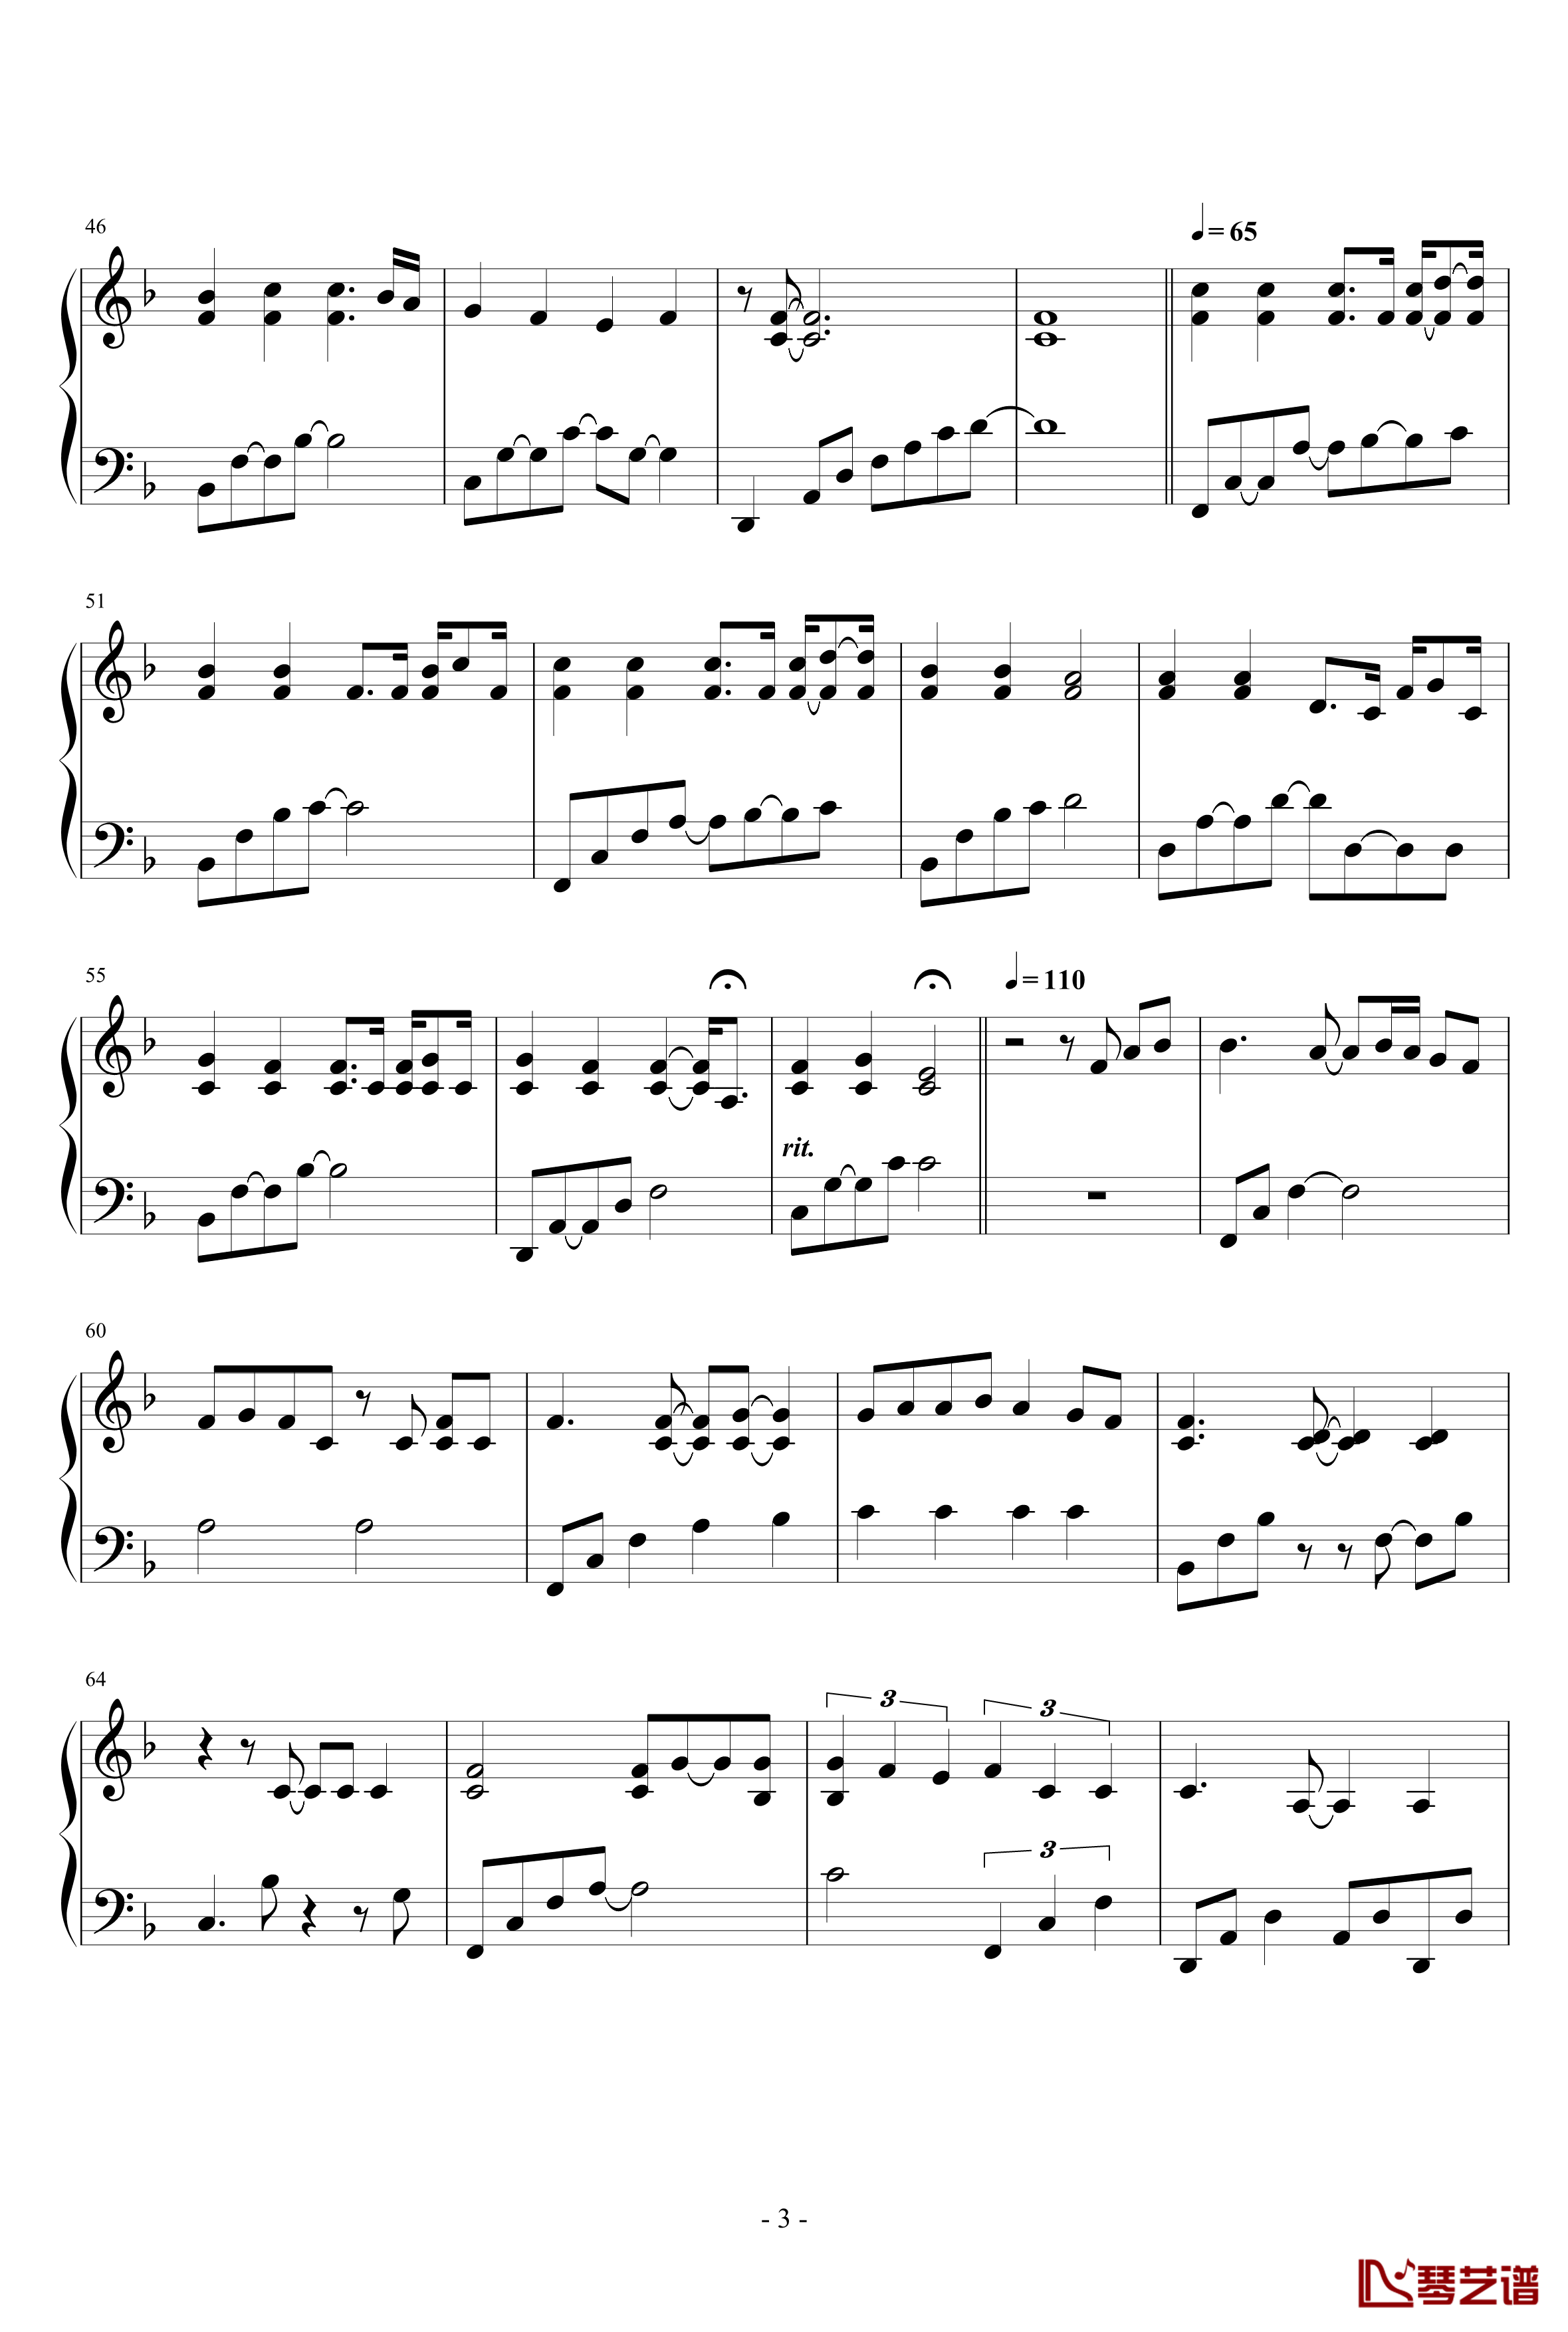 peacin out钢琴谱-REASONER3